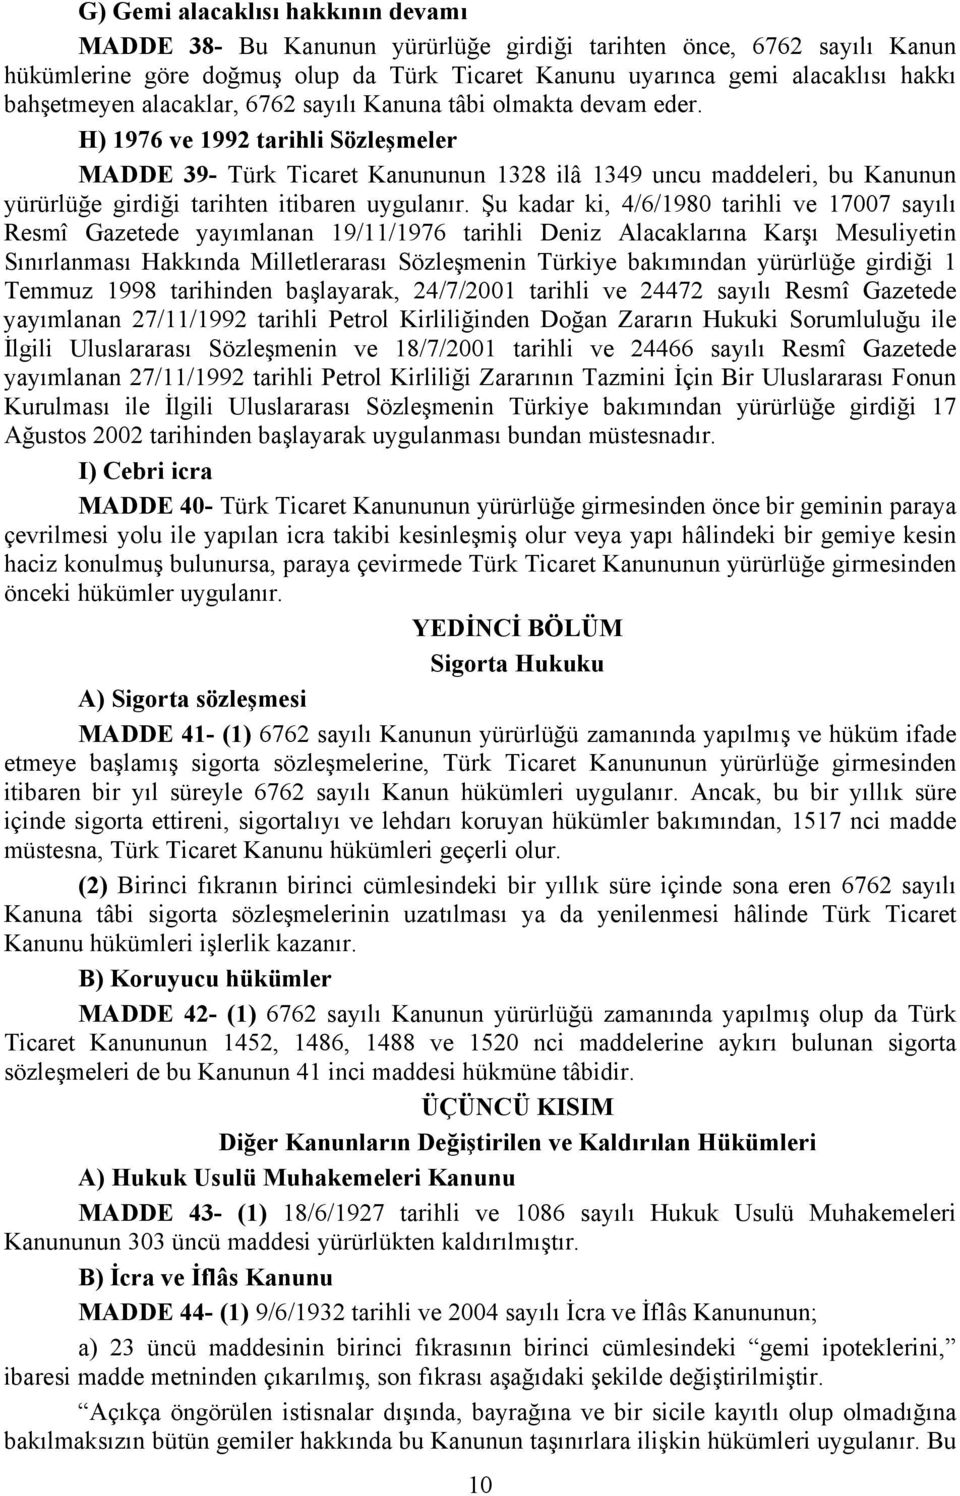 H) 1976 ve 1992 tarihli Sözleşmeler MADDE 39- Türk Ticaret Kanununun 1328 ilâ 1349 uncu maddeleri, bu Kanunun yürürlüğe girdiği tarihten itibaren uygulanır.